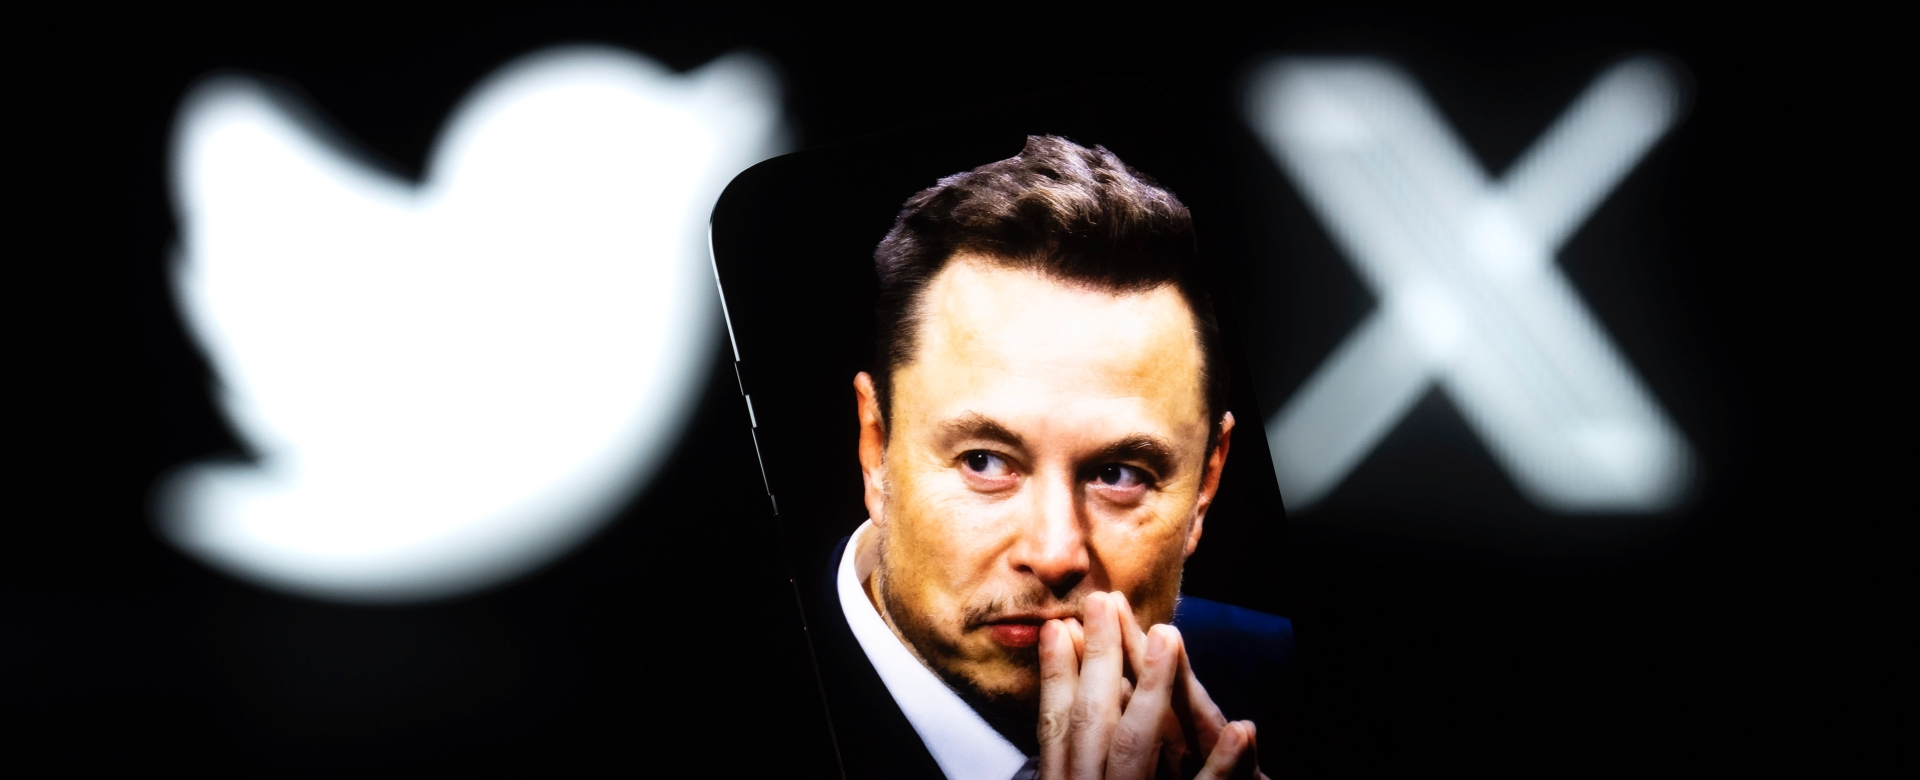 BizLab: Elon Musk nâng tầm cuộc chơi, thay logo chú chim xanh của Twitter thành “X”